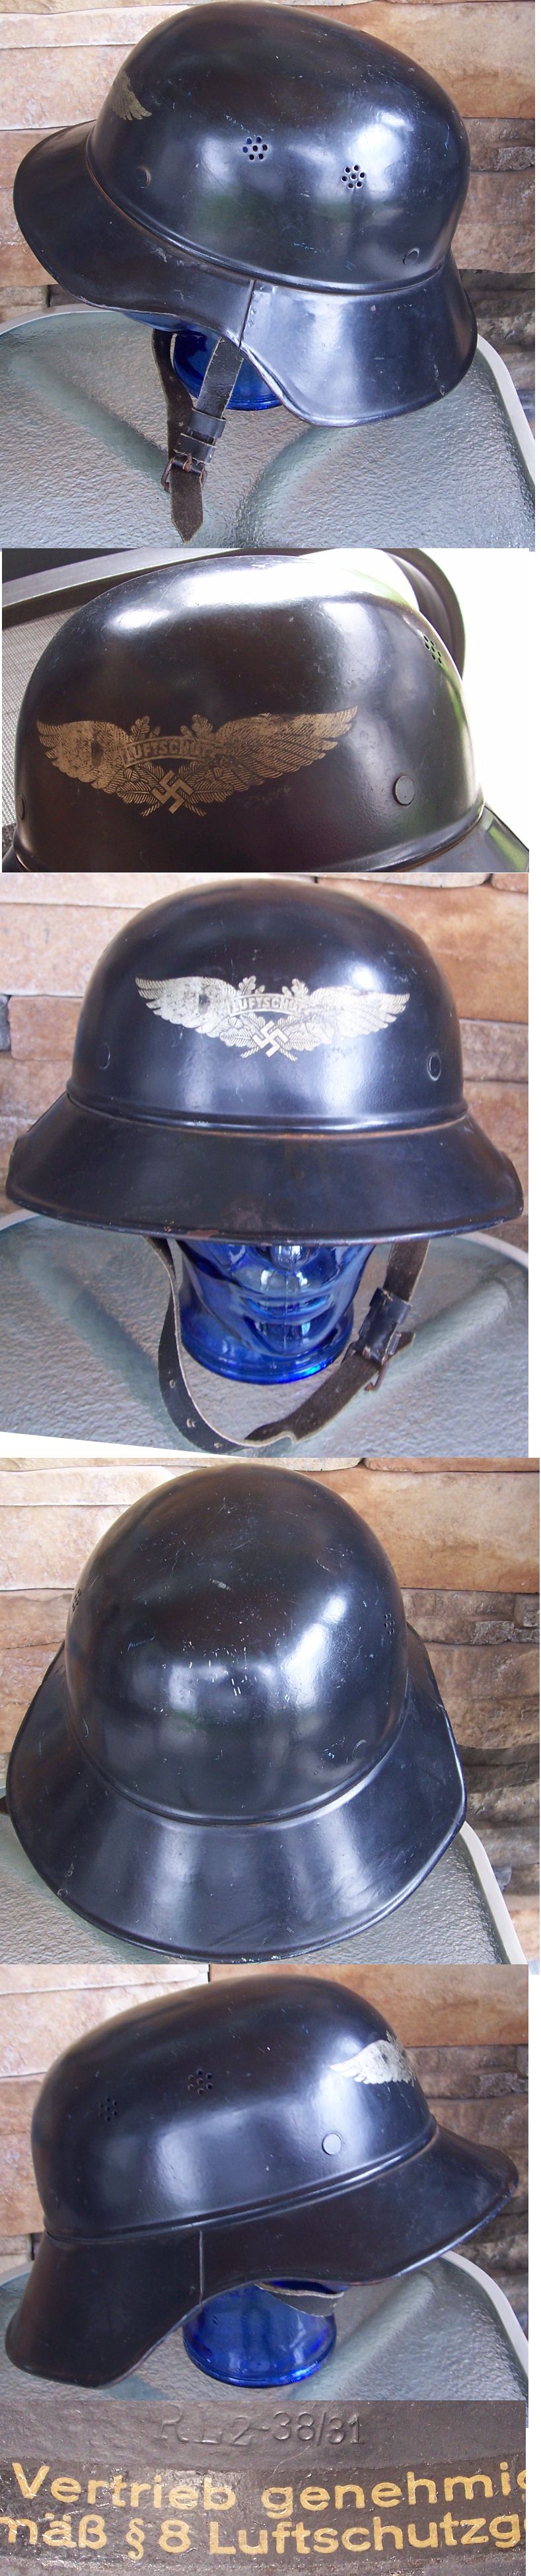 M38 Luftschutz Helmet 